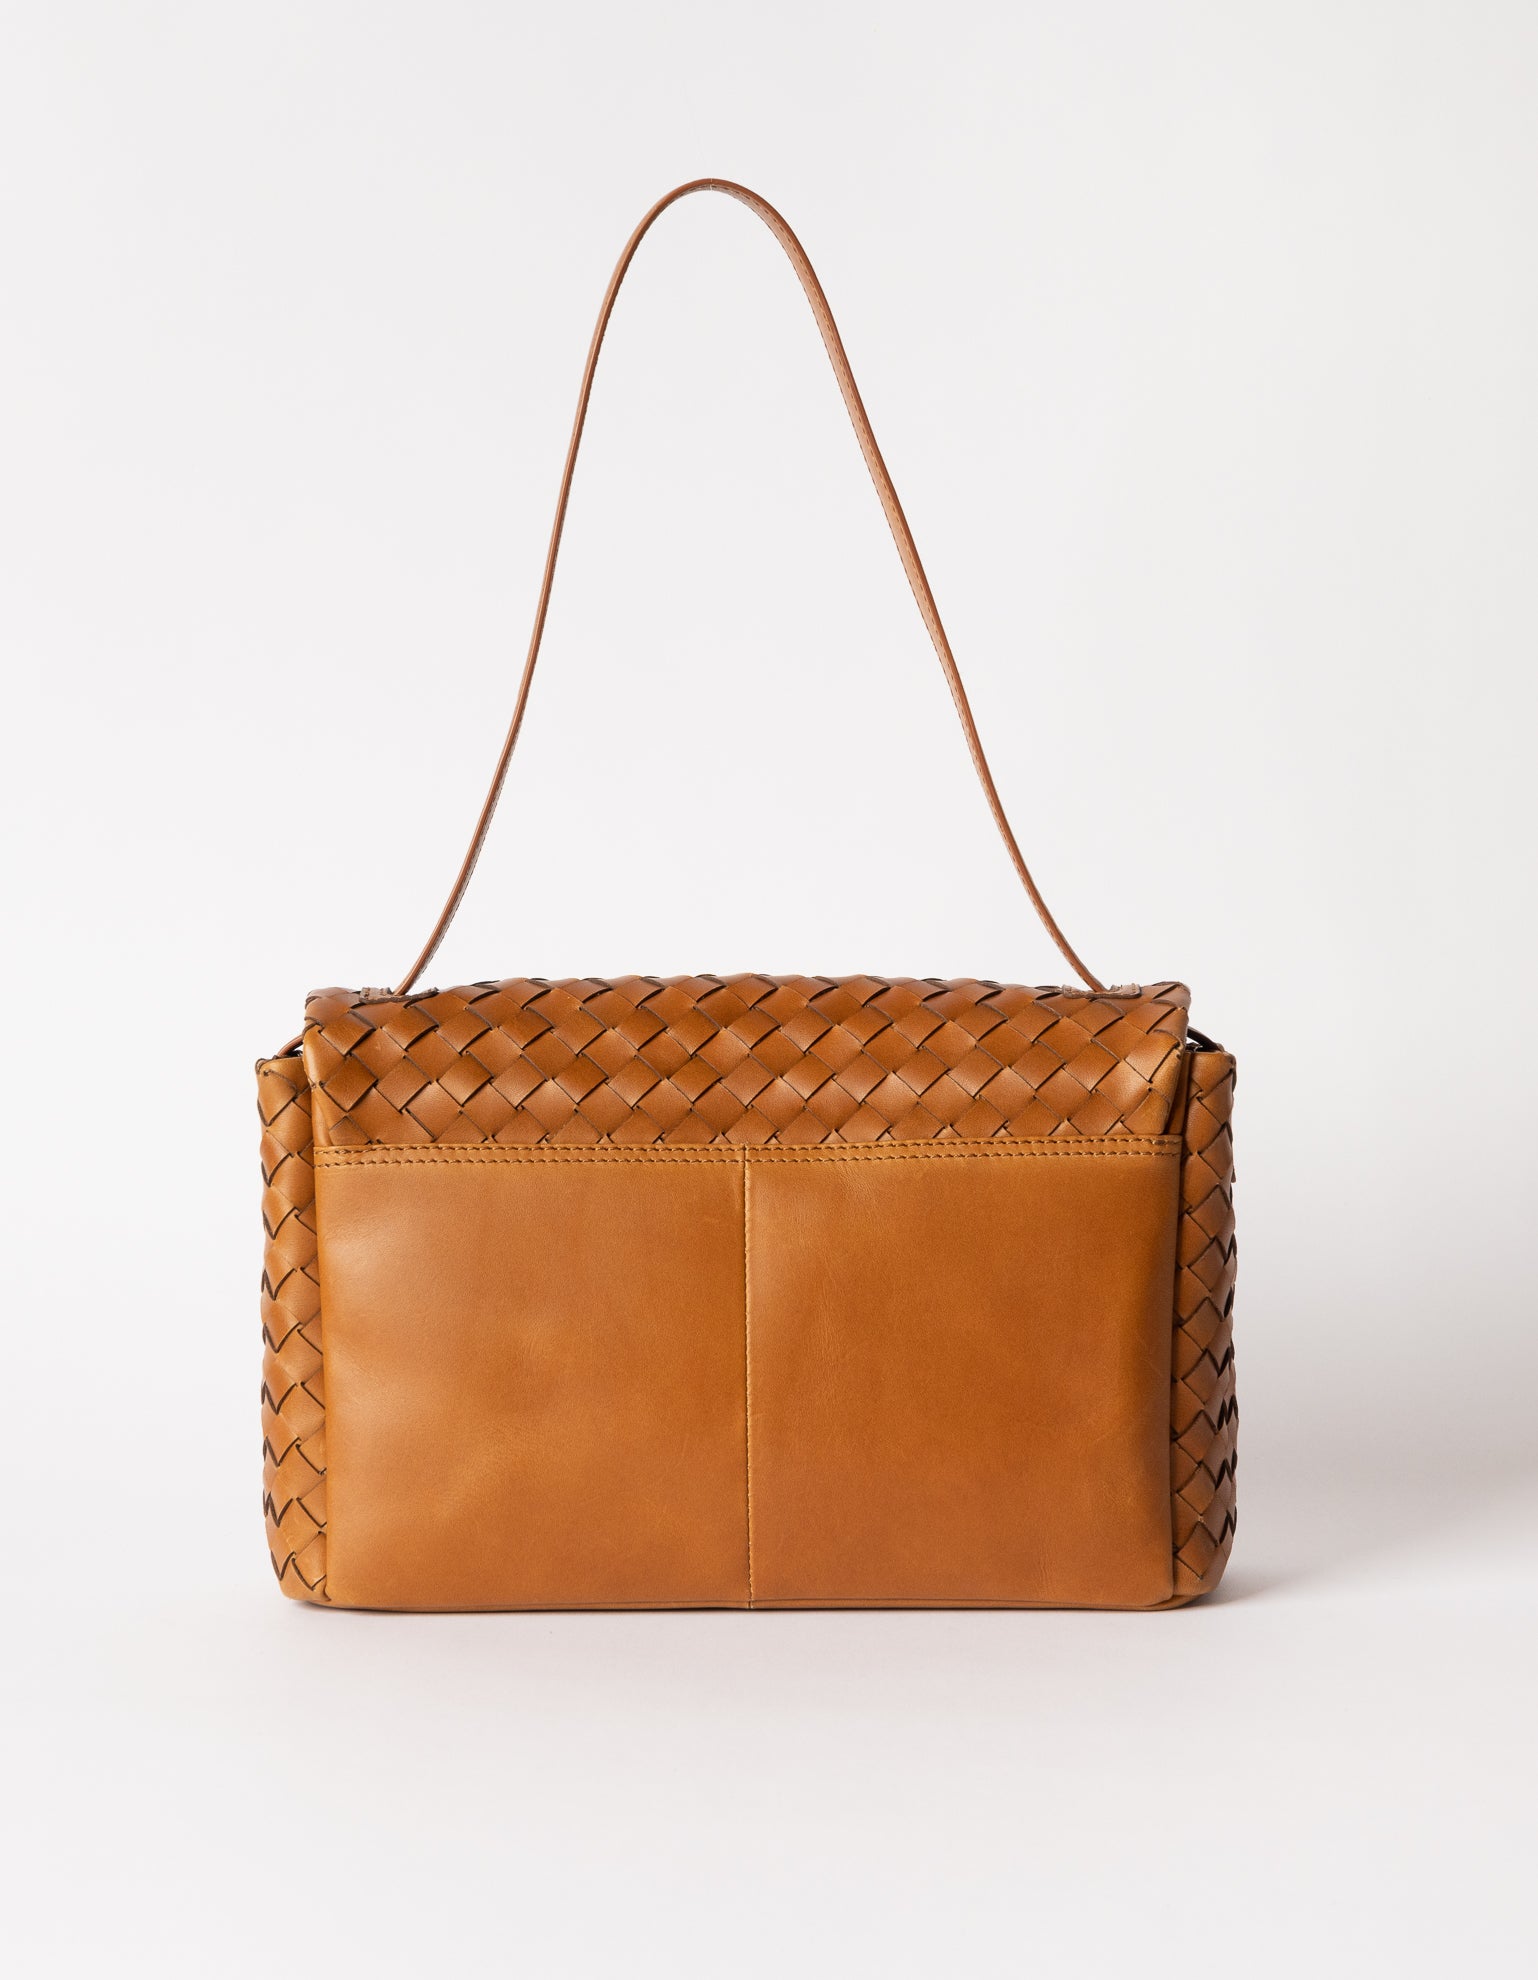 Woven leather shoulder bag - Back product image